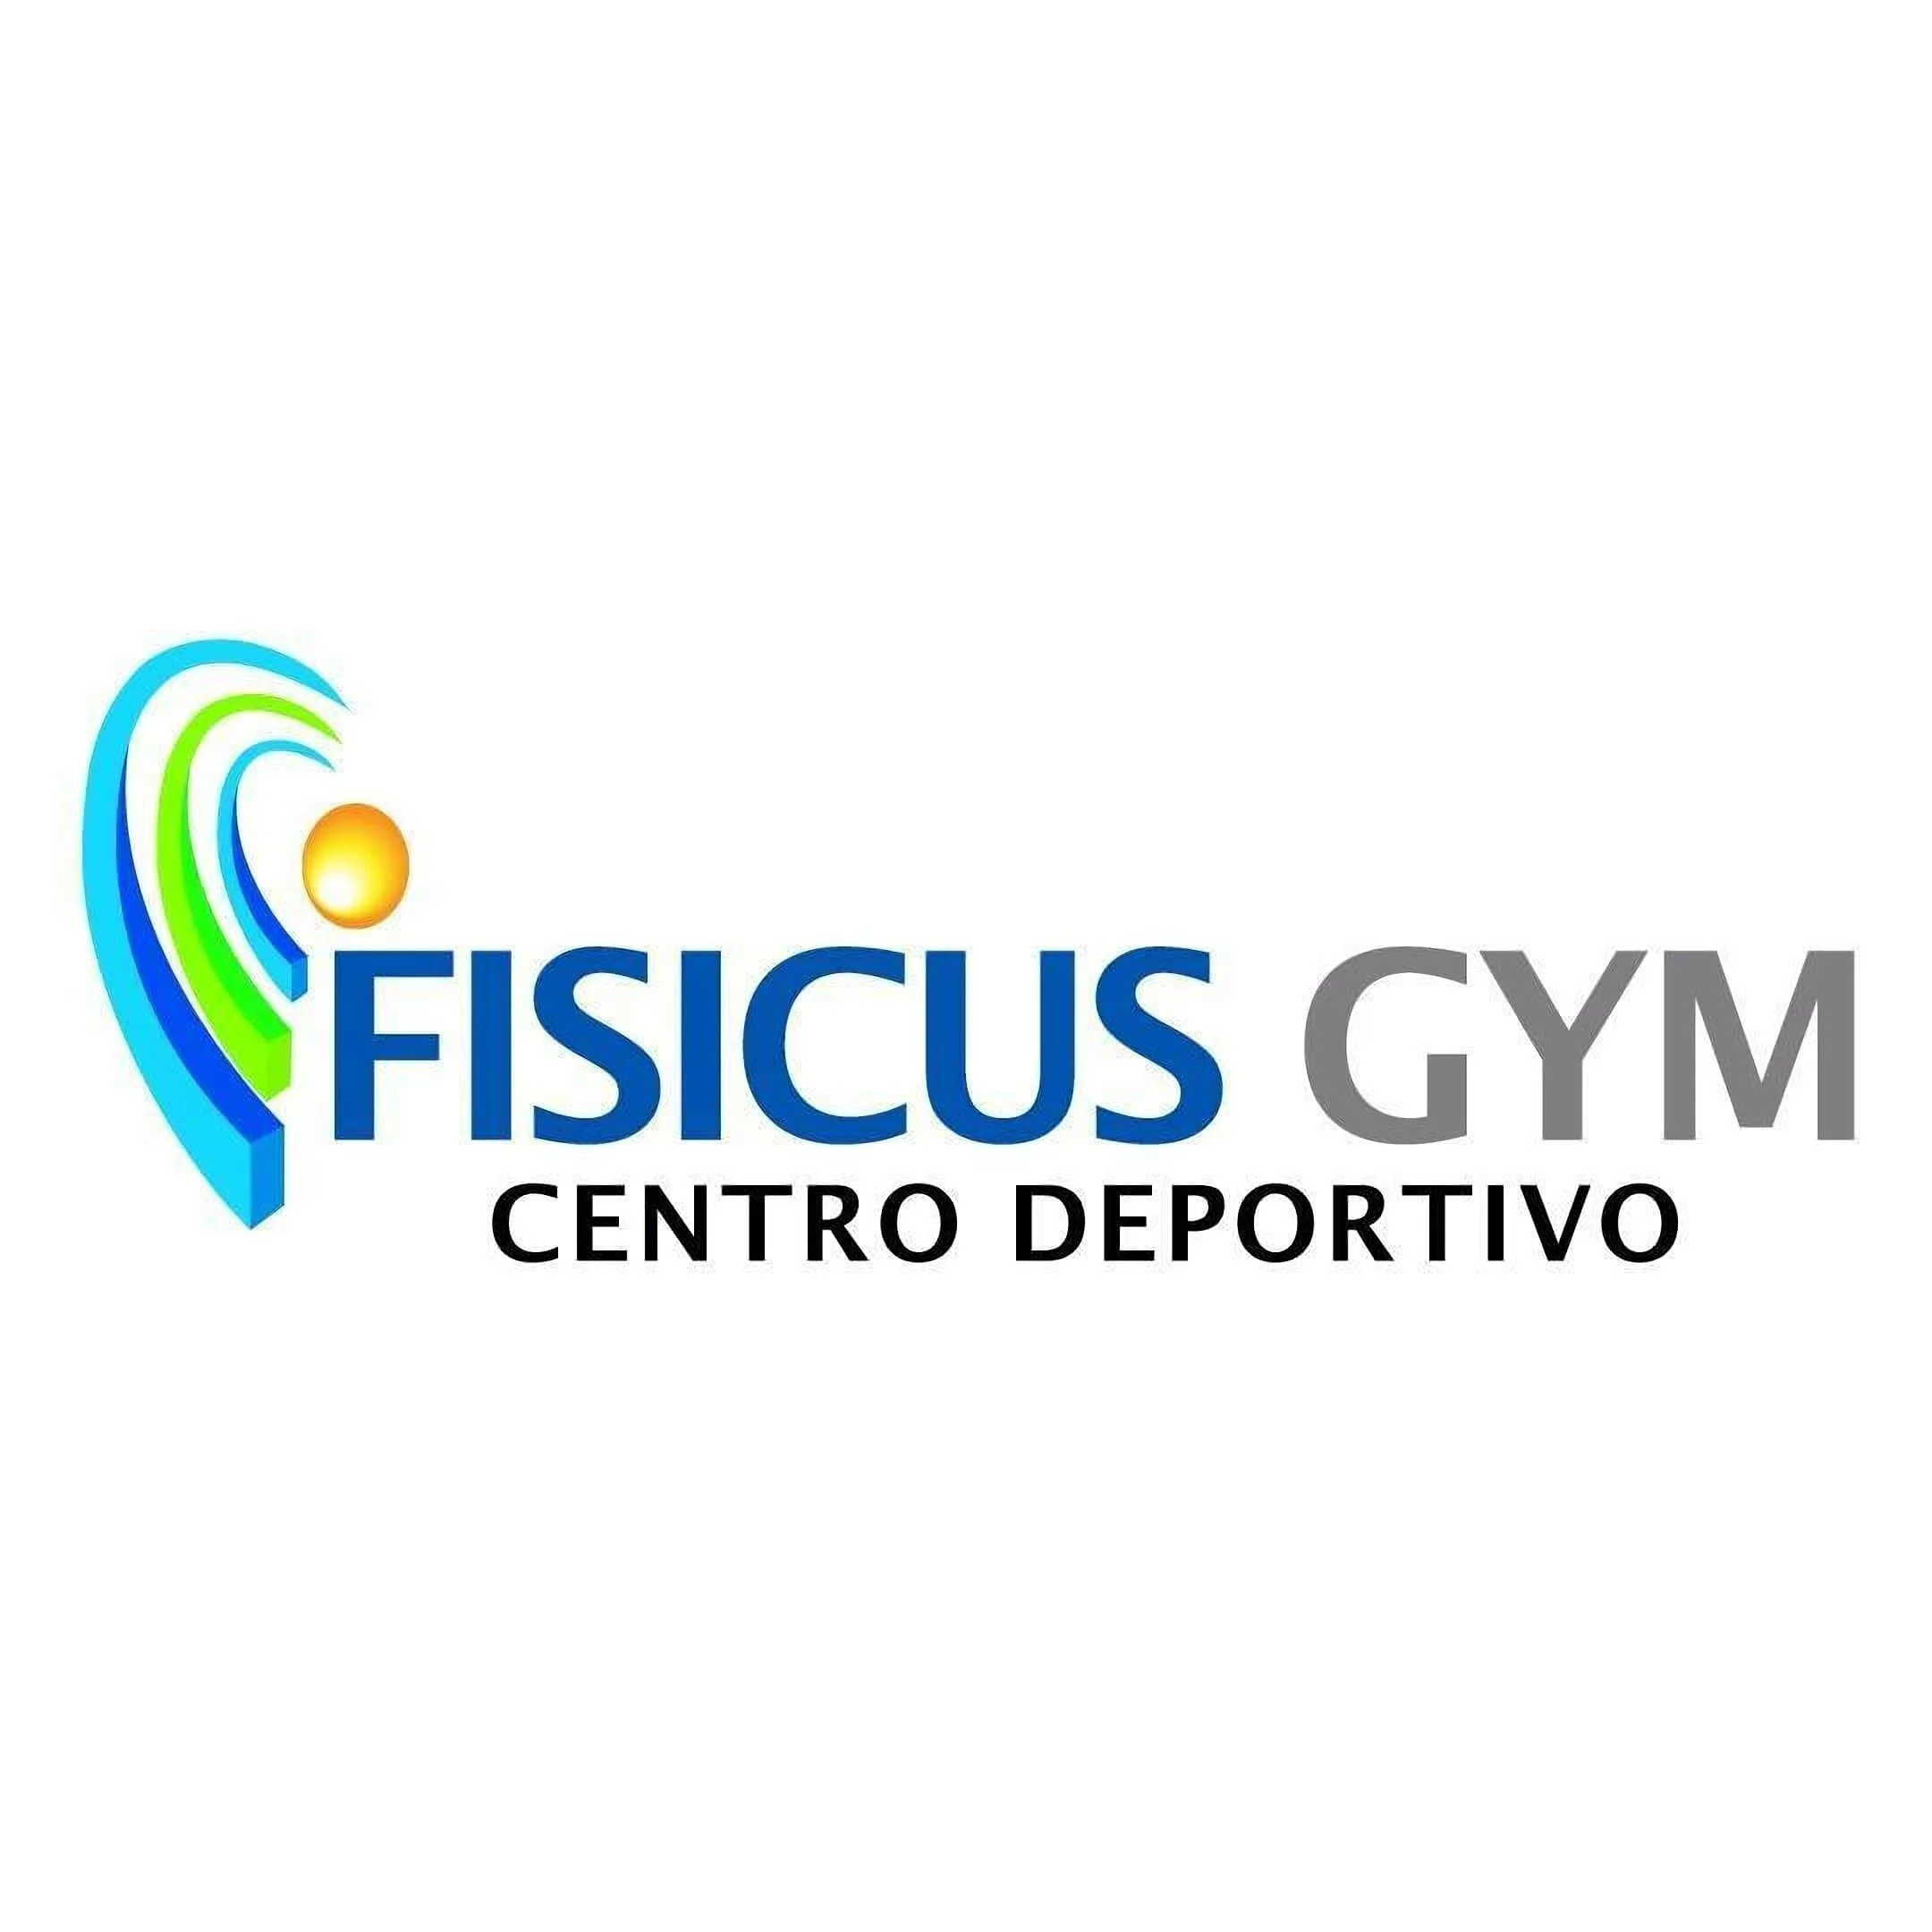 Fisicus Gym-546